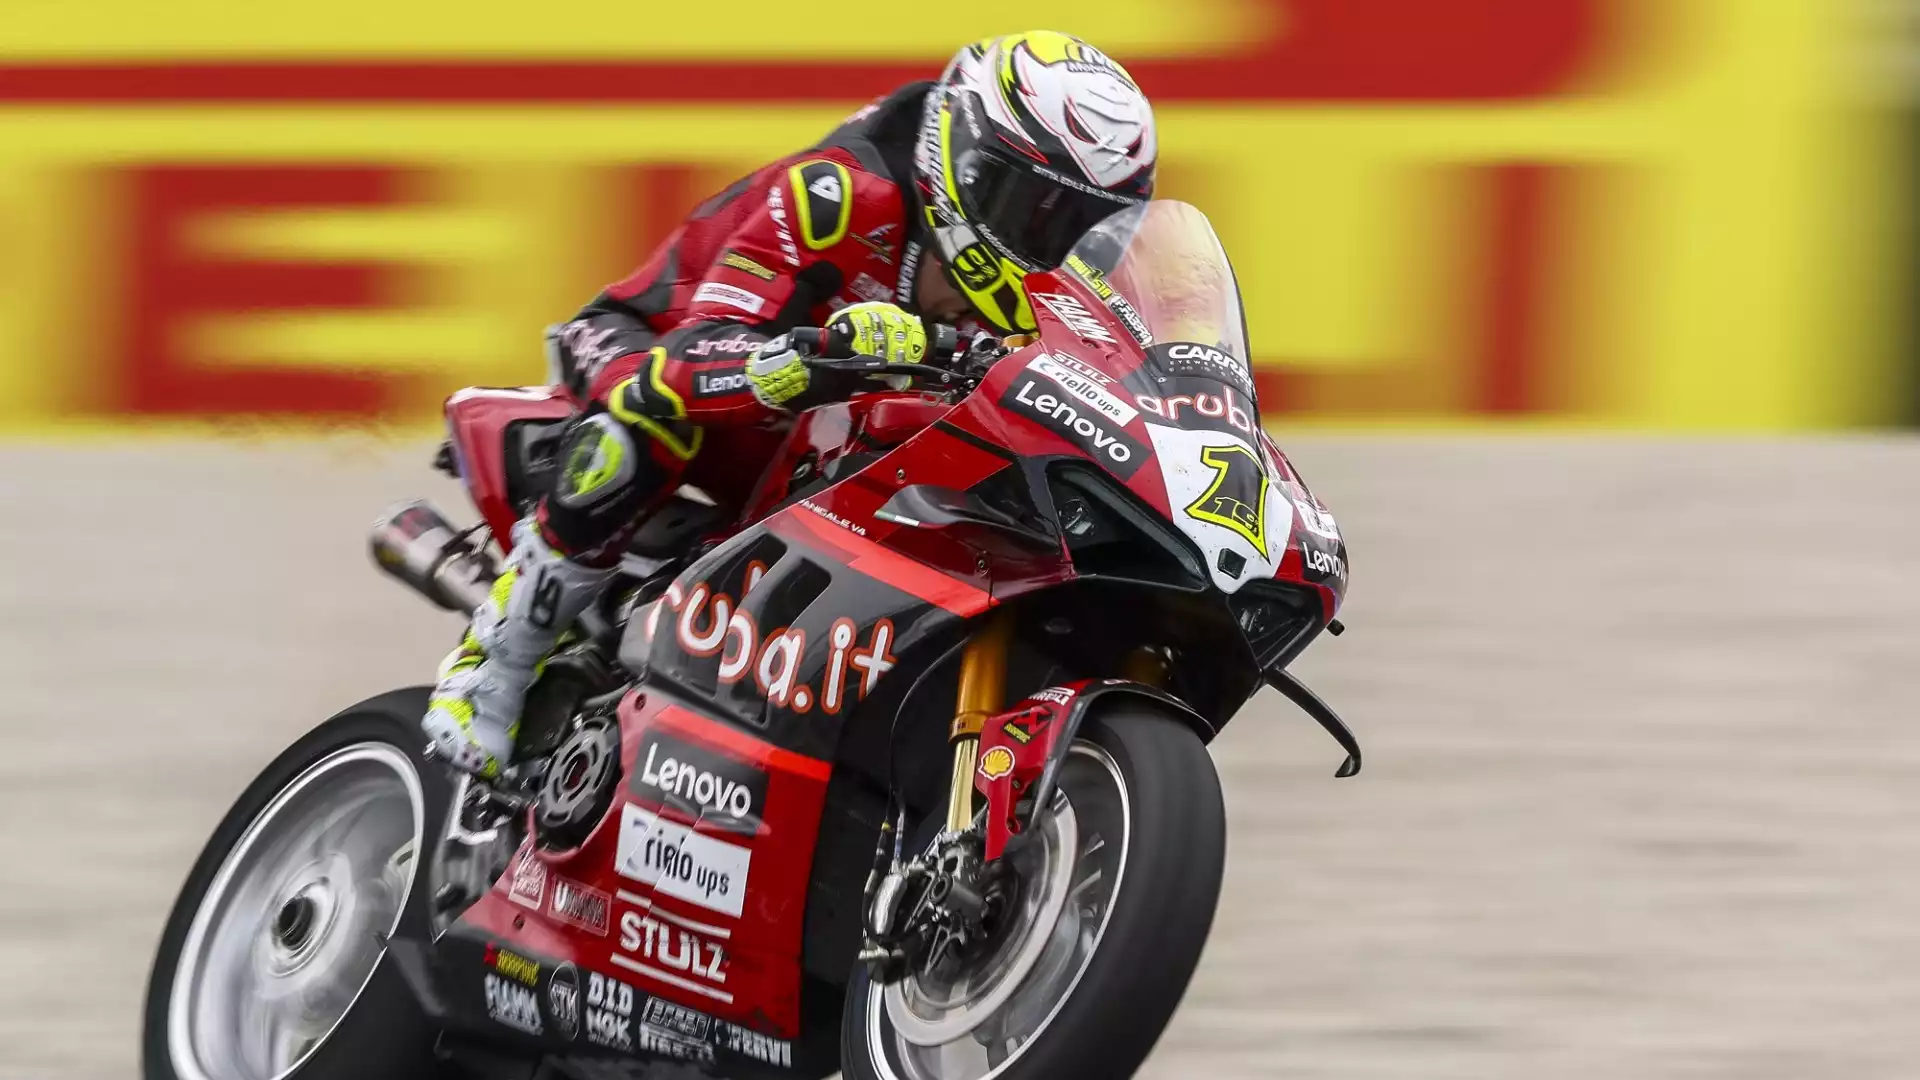 Superbike, Catalogna: dominio di Alvaro Bautista e Ducati in gara-1